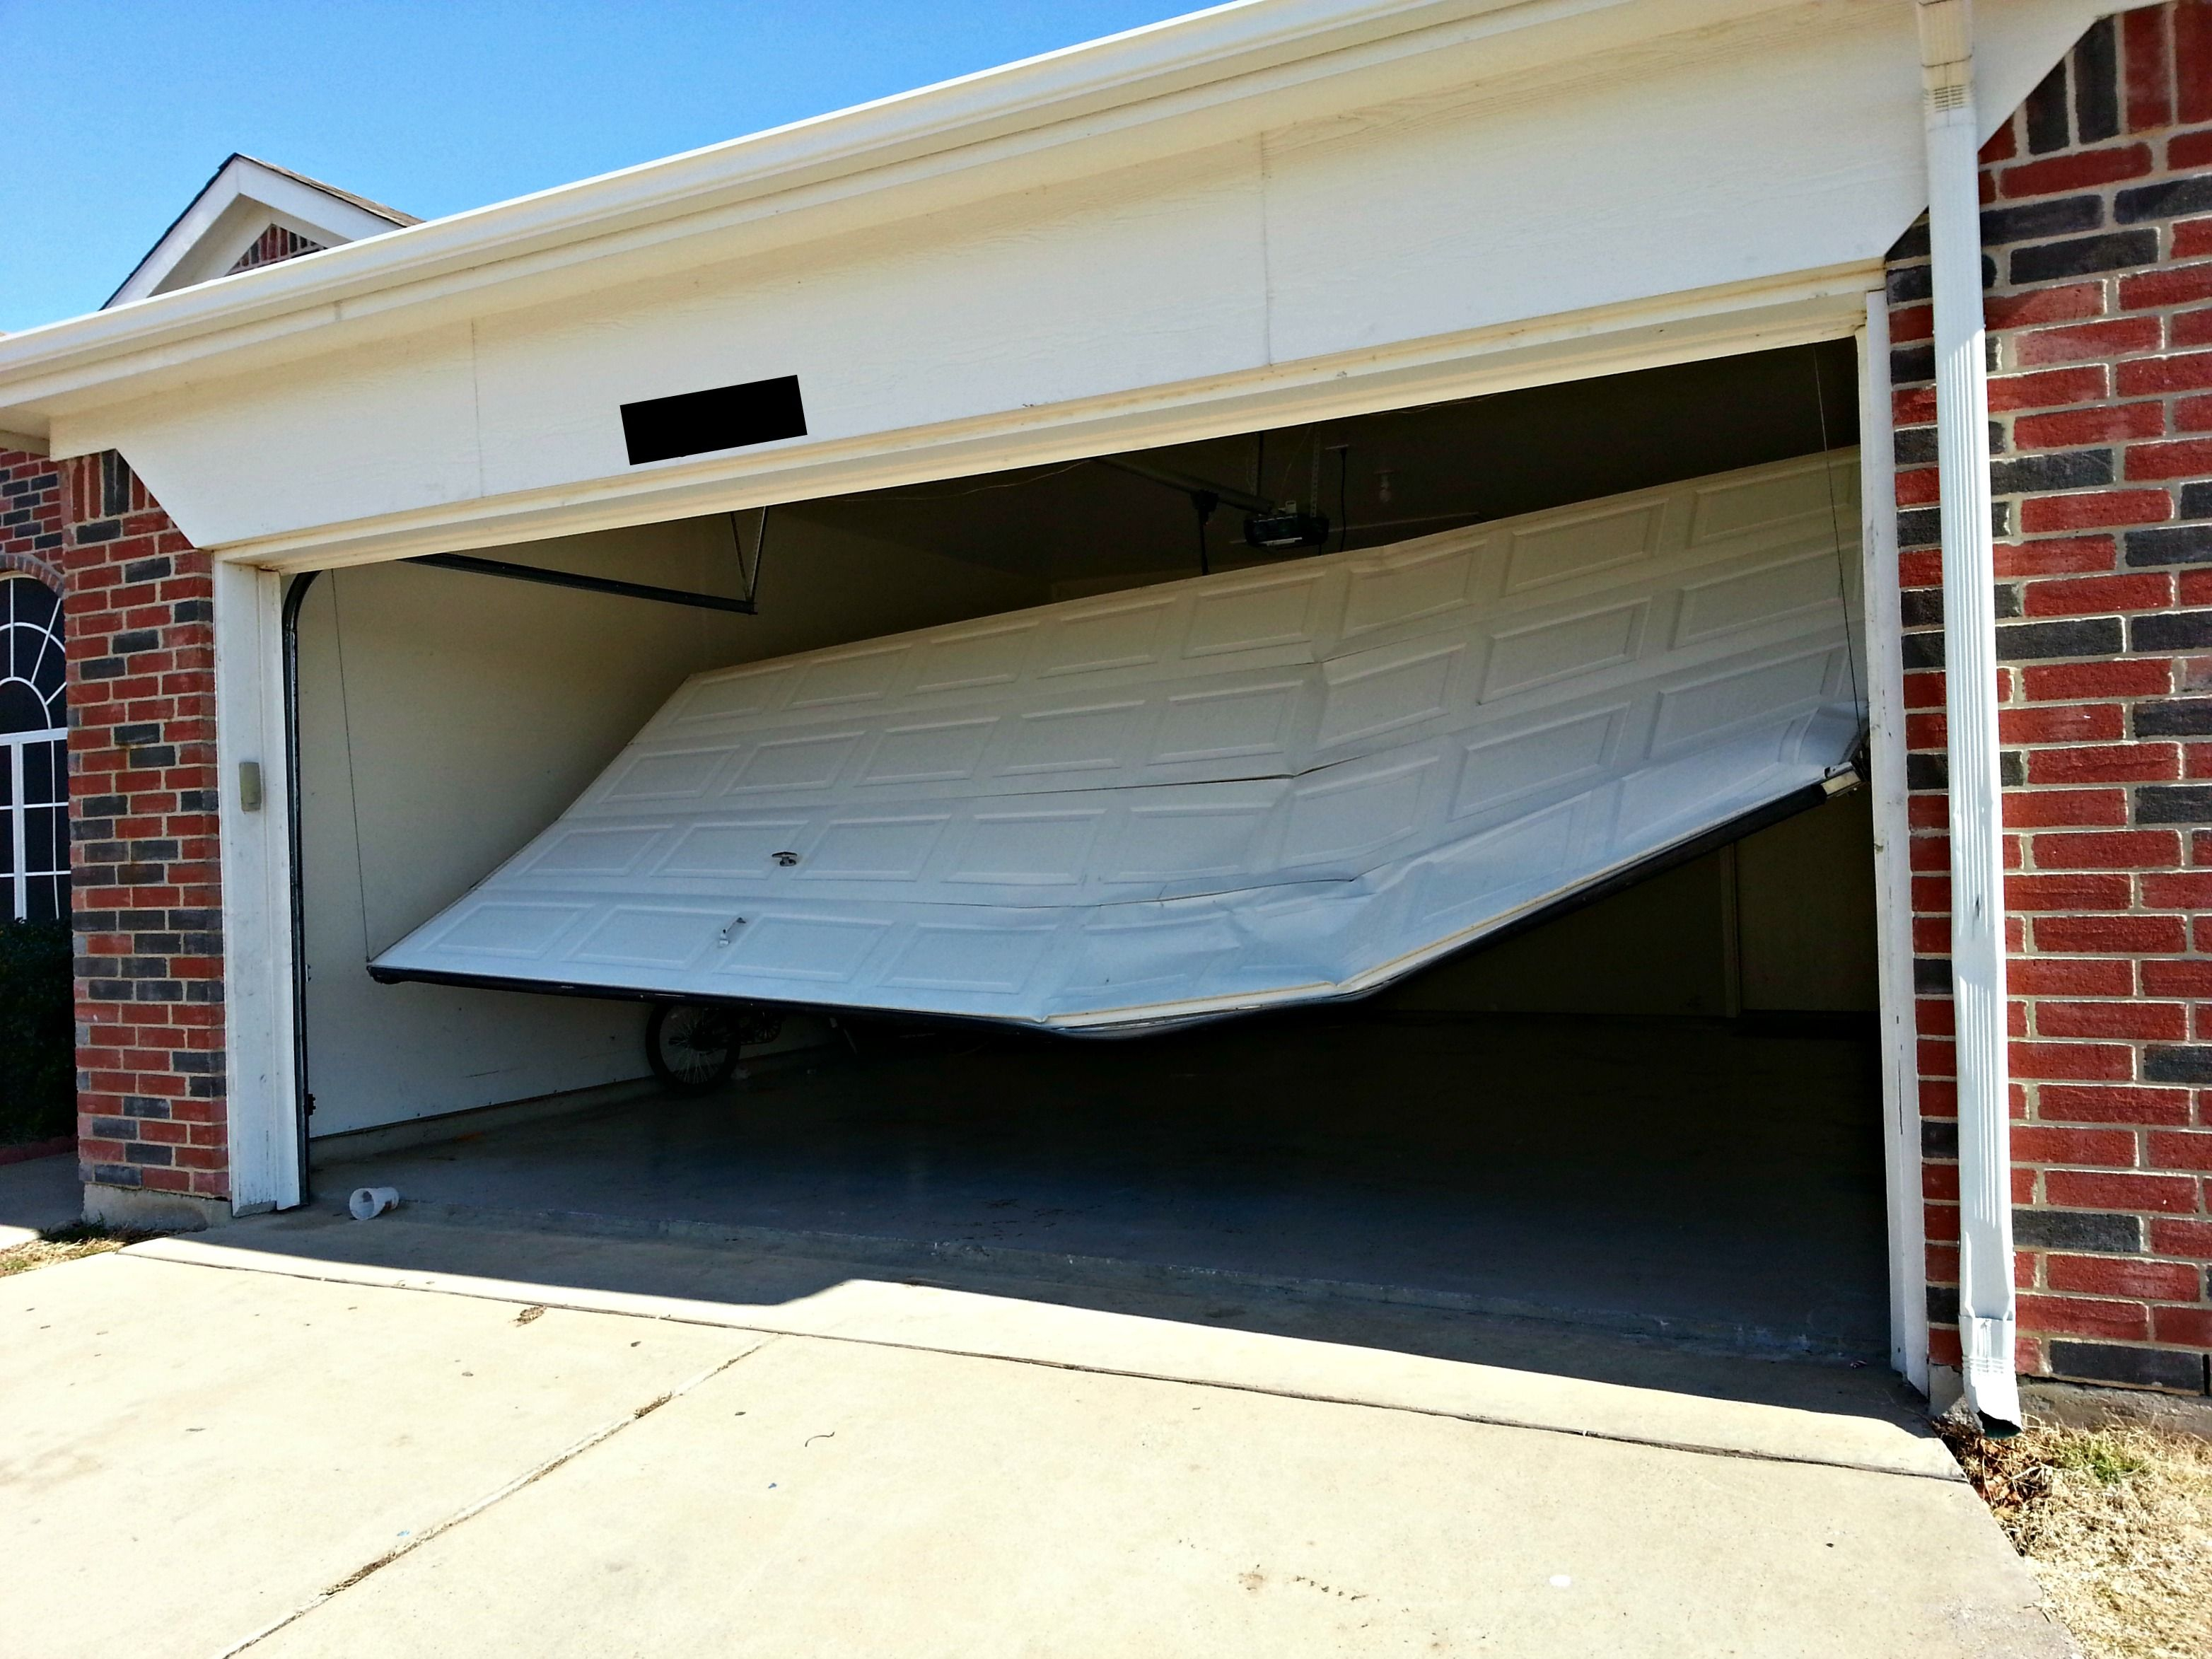 Fixing Your Broken Garage Door Opener The Best Home Improvement with sizing 3128 X 2346